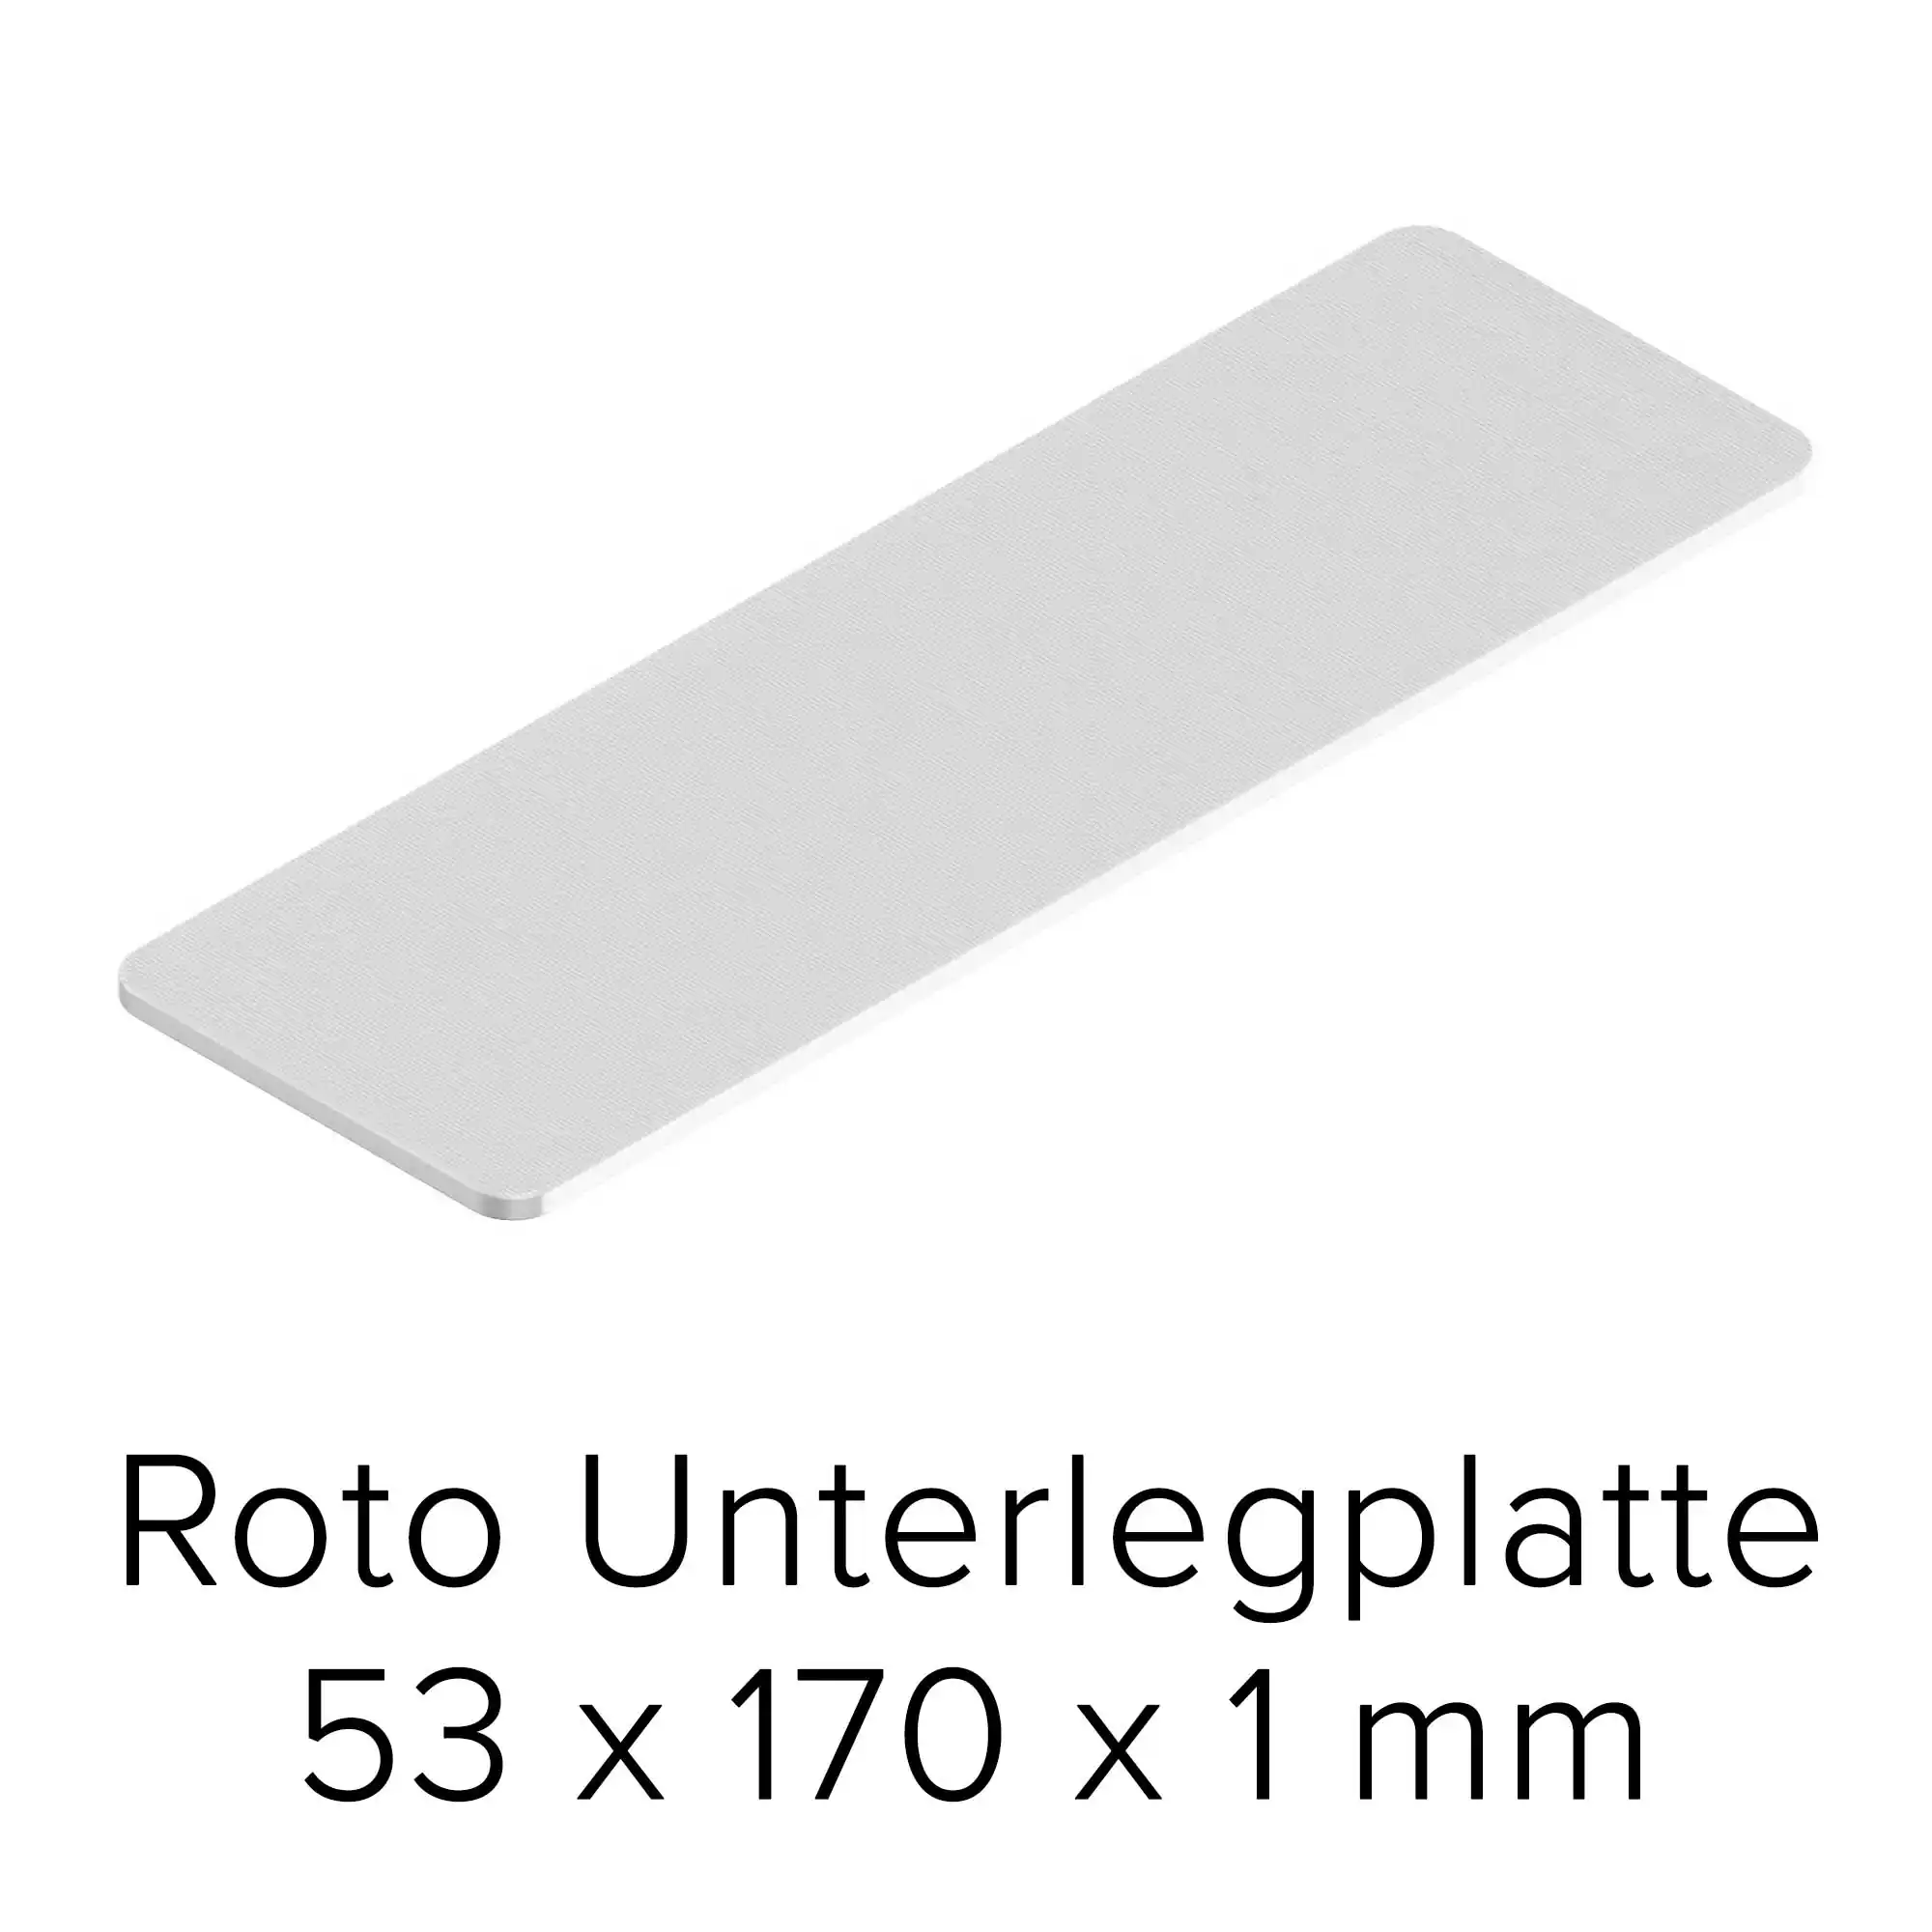 Roto Unterlegplatte 53 x 170 x 1 mm